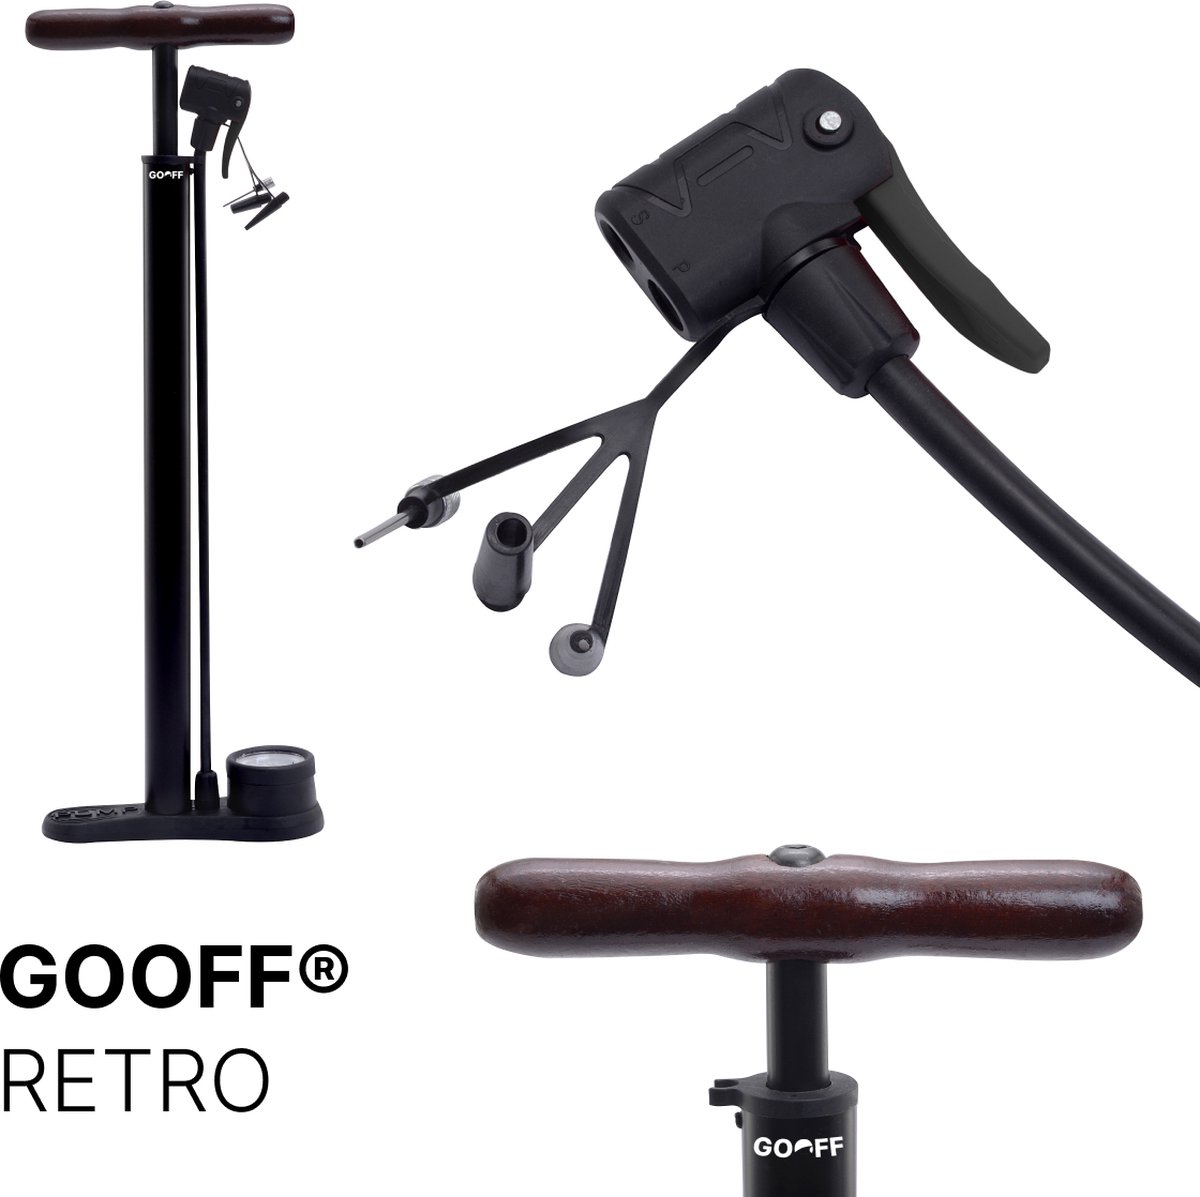 GOOFF® voetpomp RETRO - houten handvat - fietspomp met drukmeter voor alle ventielen